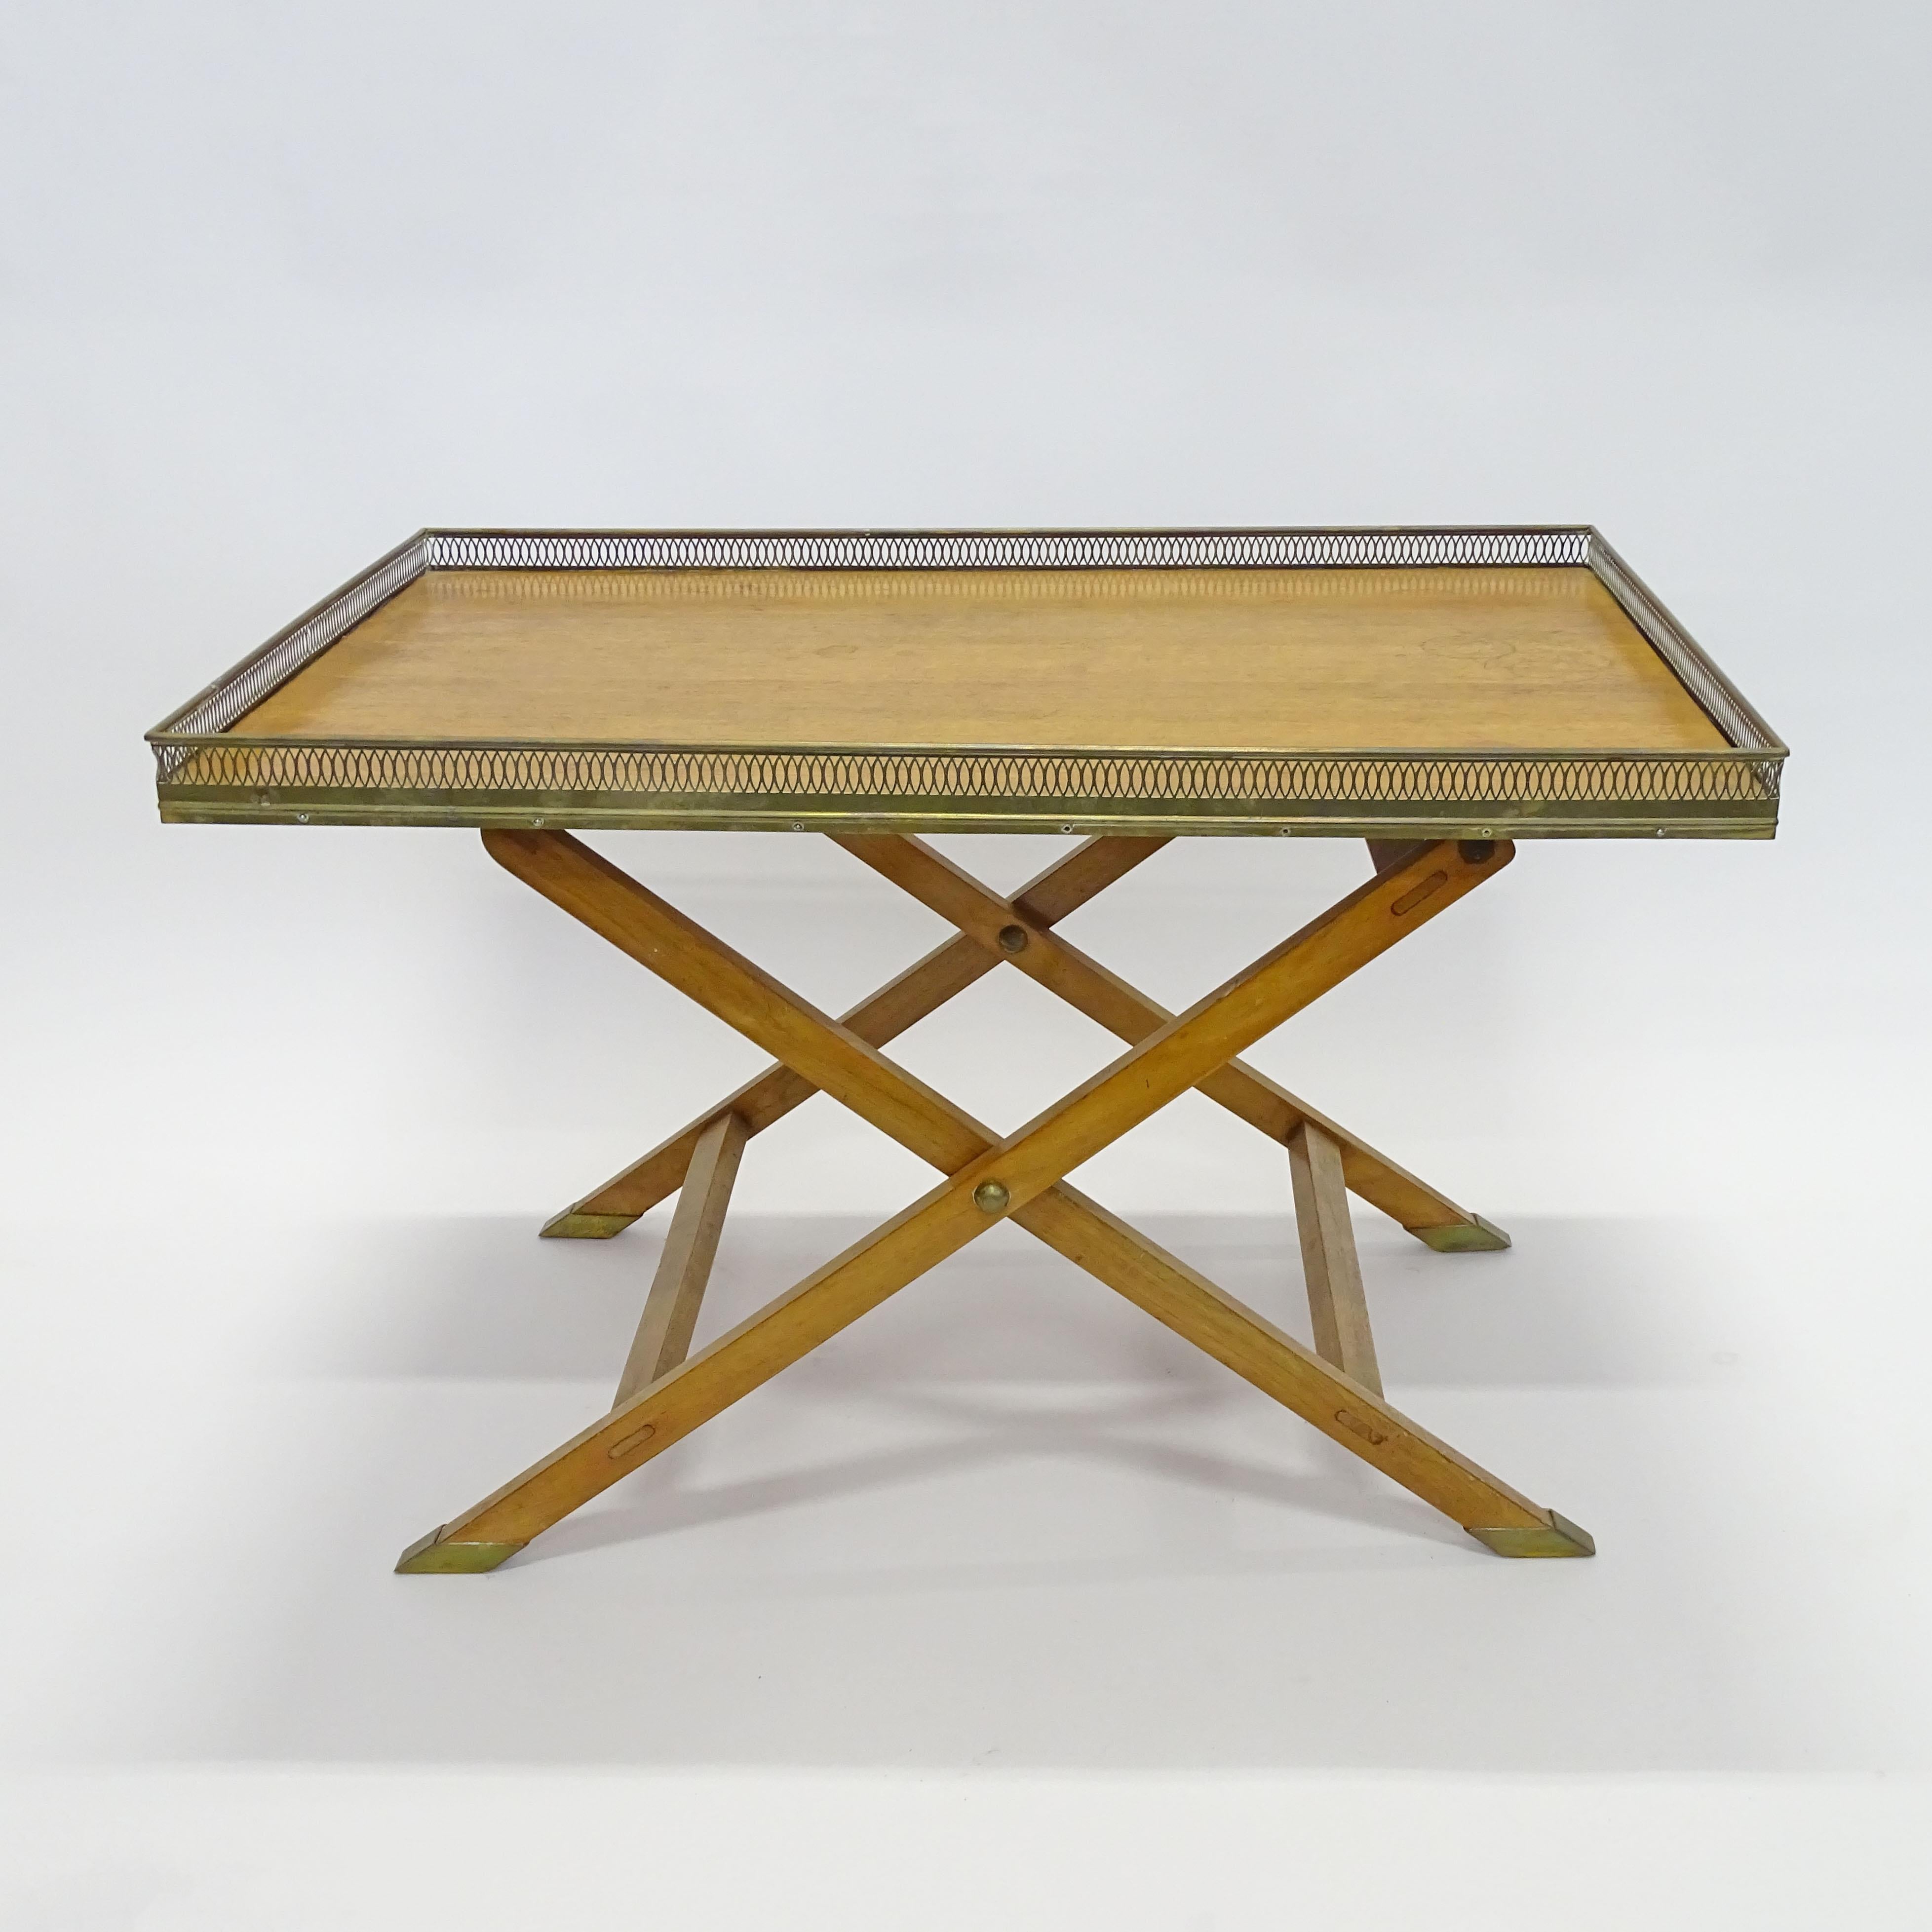 Magnifique table basse pliante en bois et laiton, très similaire à la table 'BORD FLAMMES' de Maria Pergay.
Italie années 1950